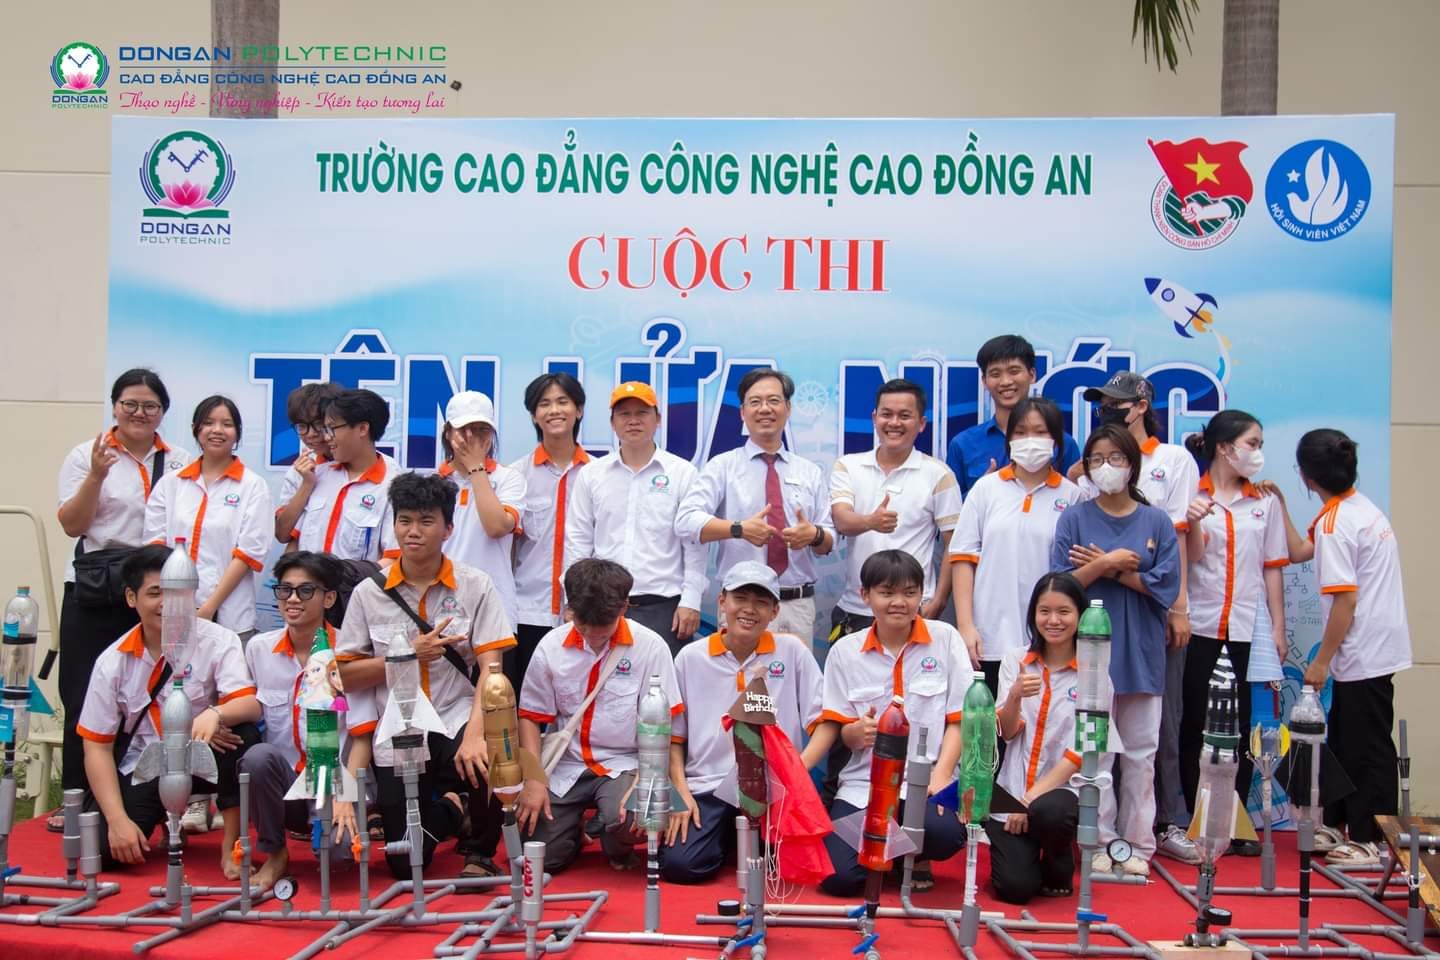 Cuộc thi "Tên lửa nước lần 1" Trường Cao đẳng Công nghệ cao Đồng an